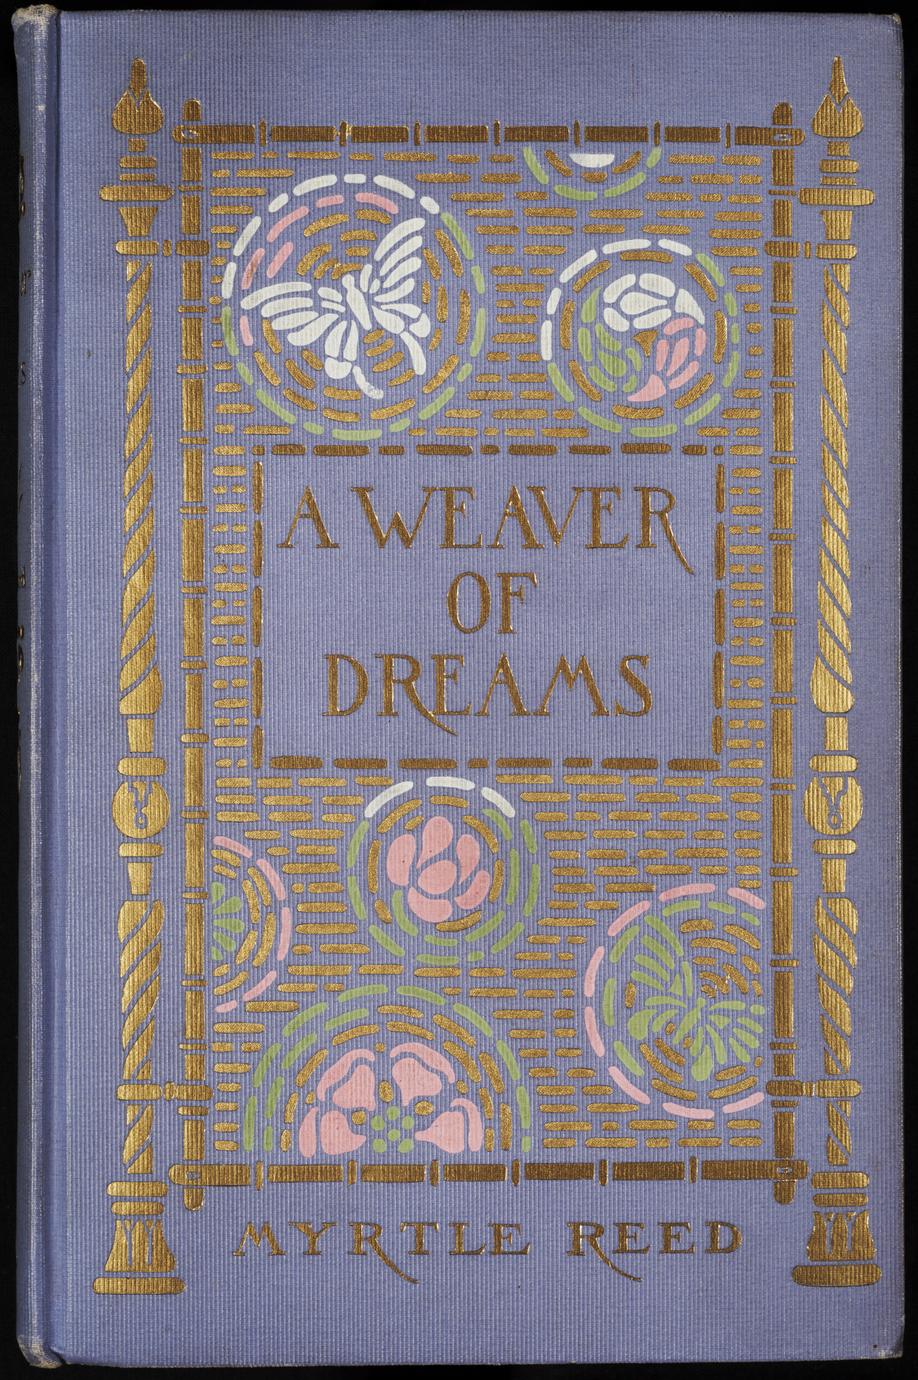 A weaver of dreams (1 of 2)